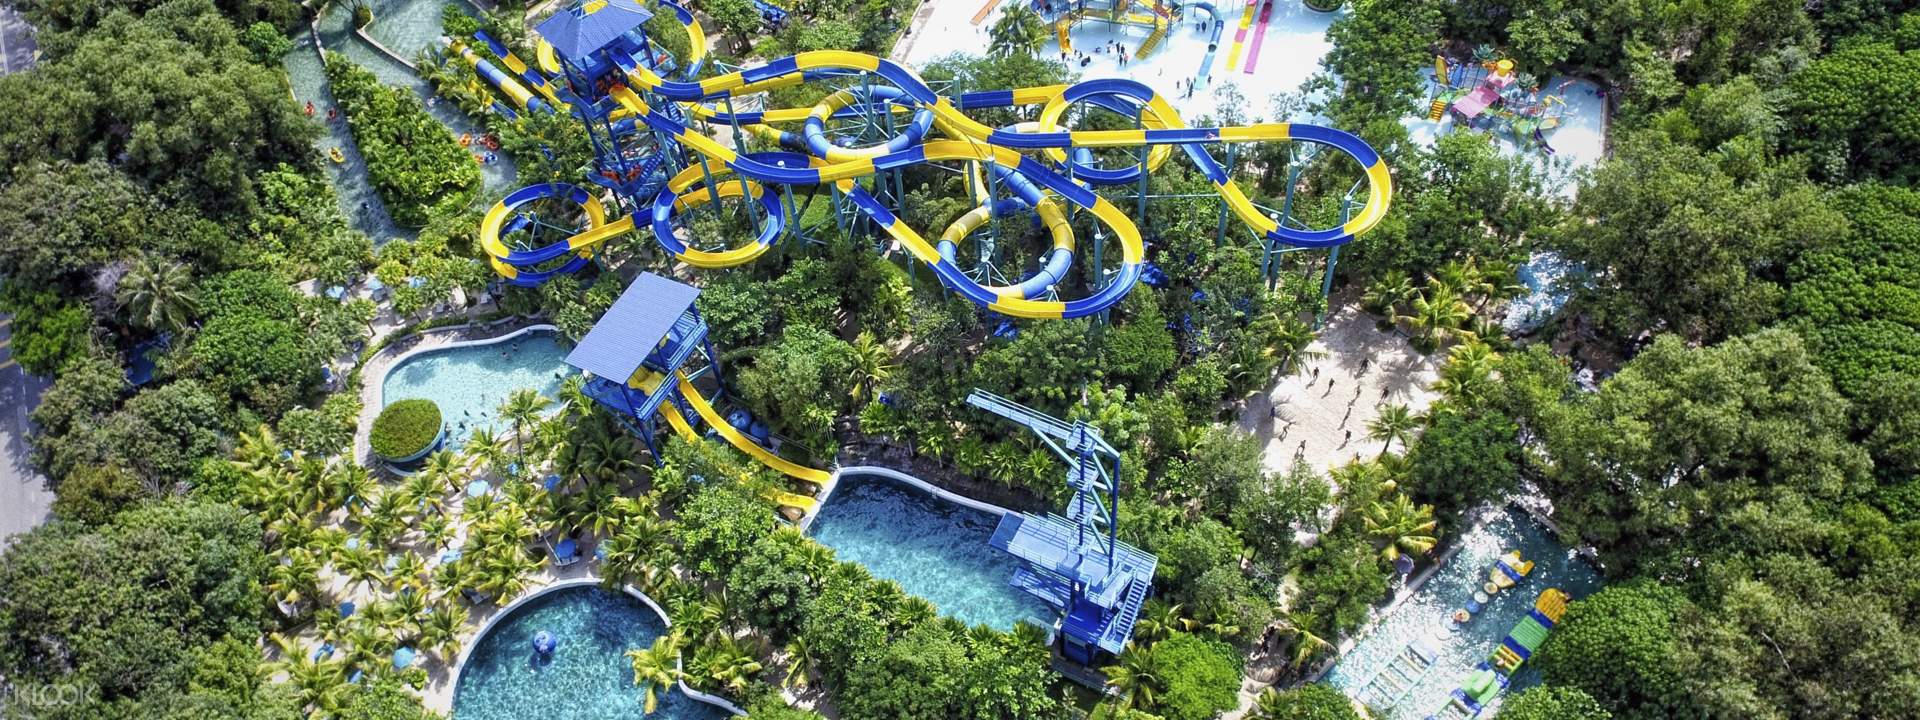  ESCAPE  Theme Park in Penang 